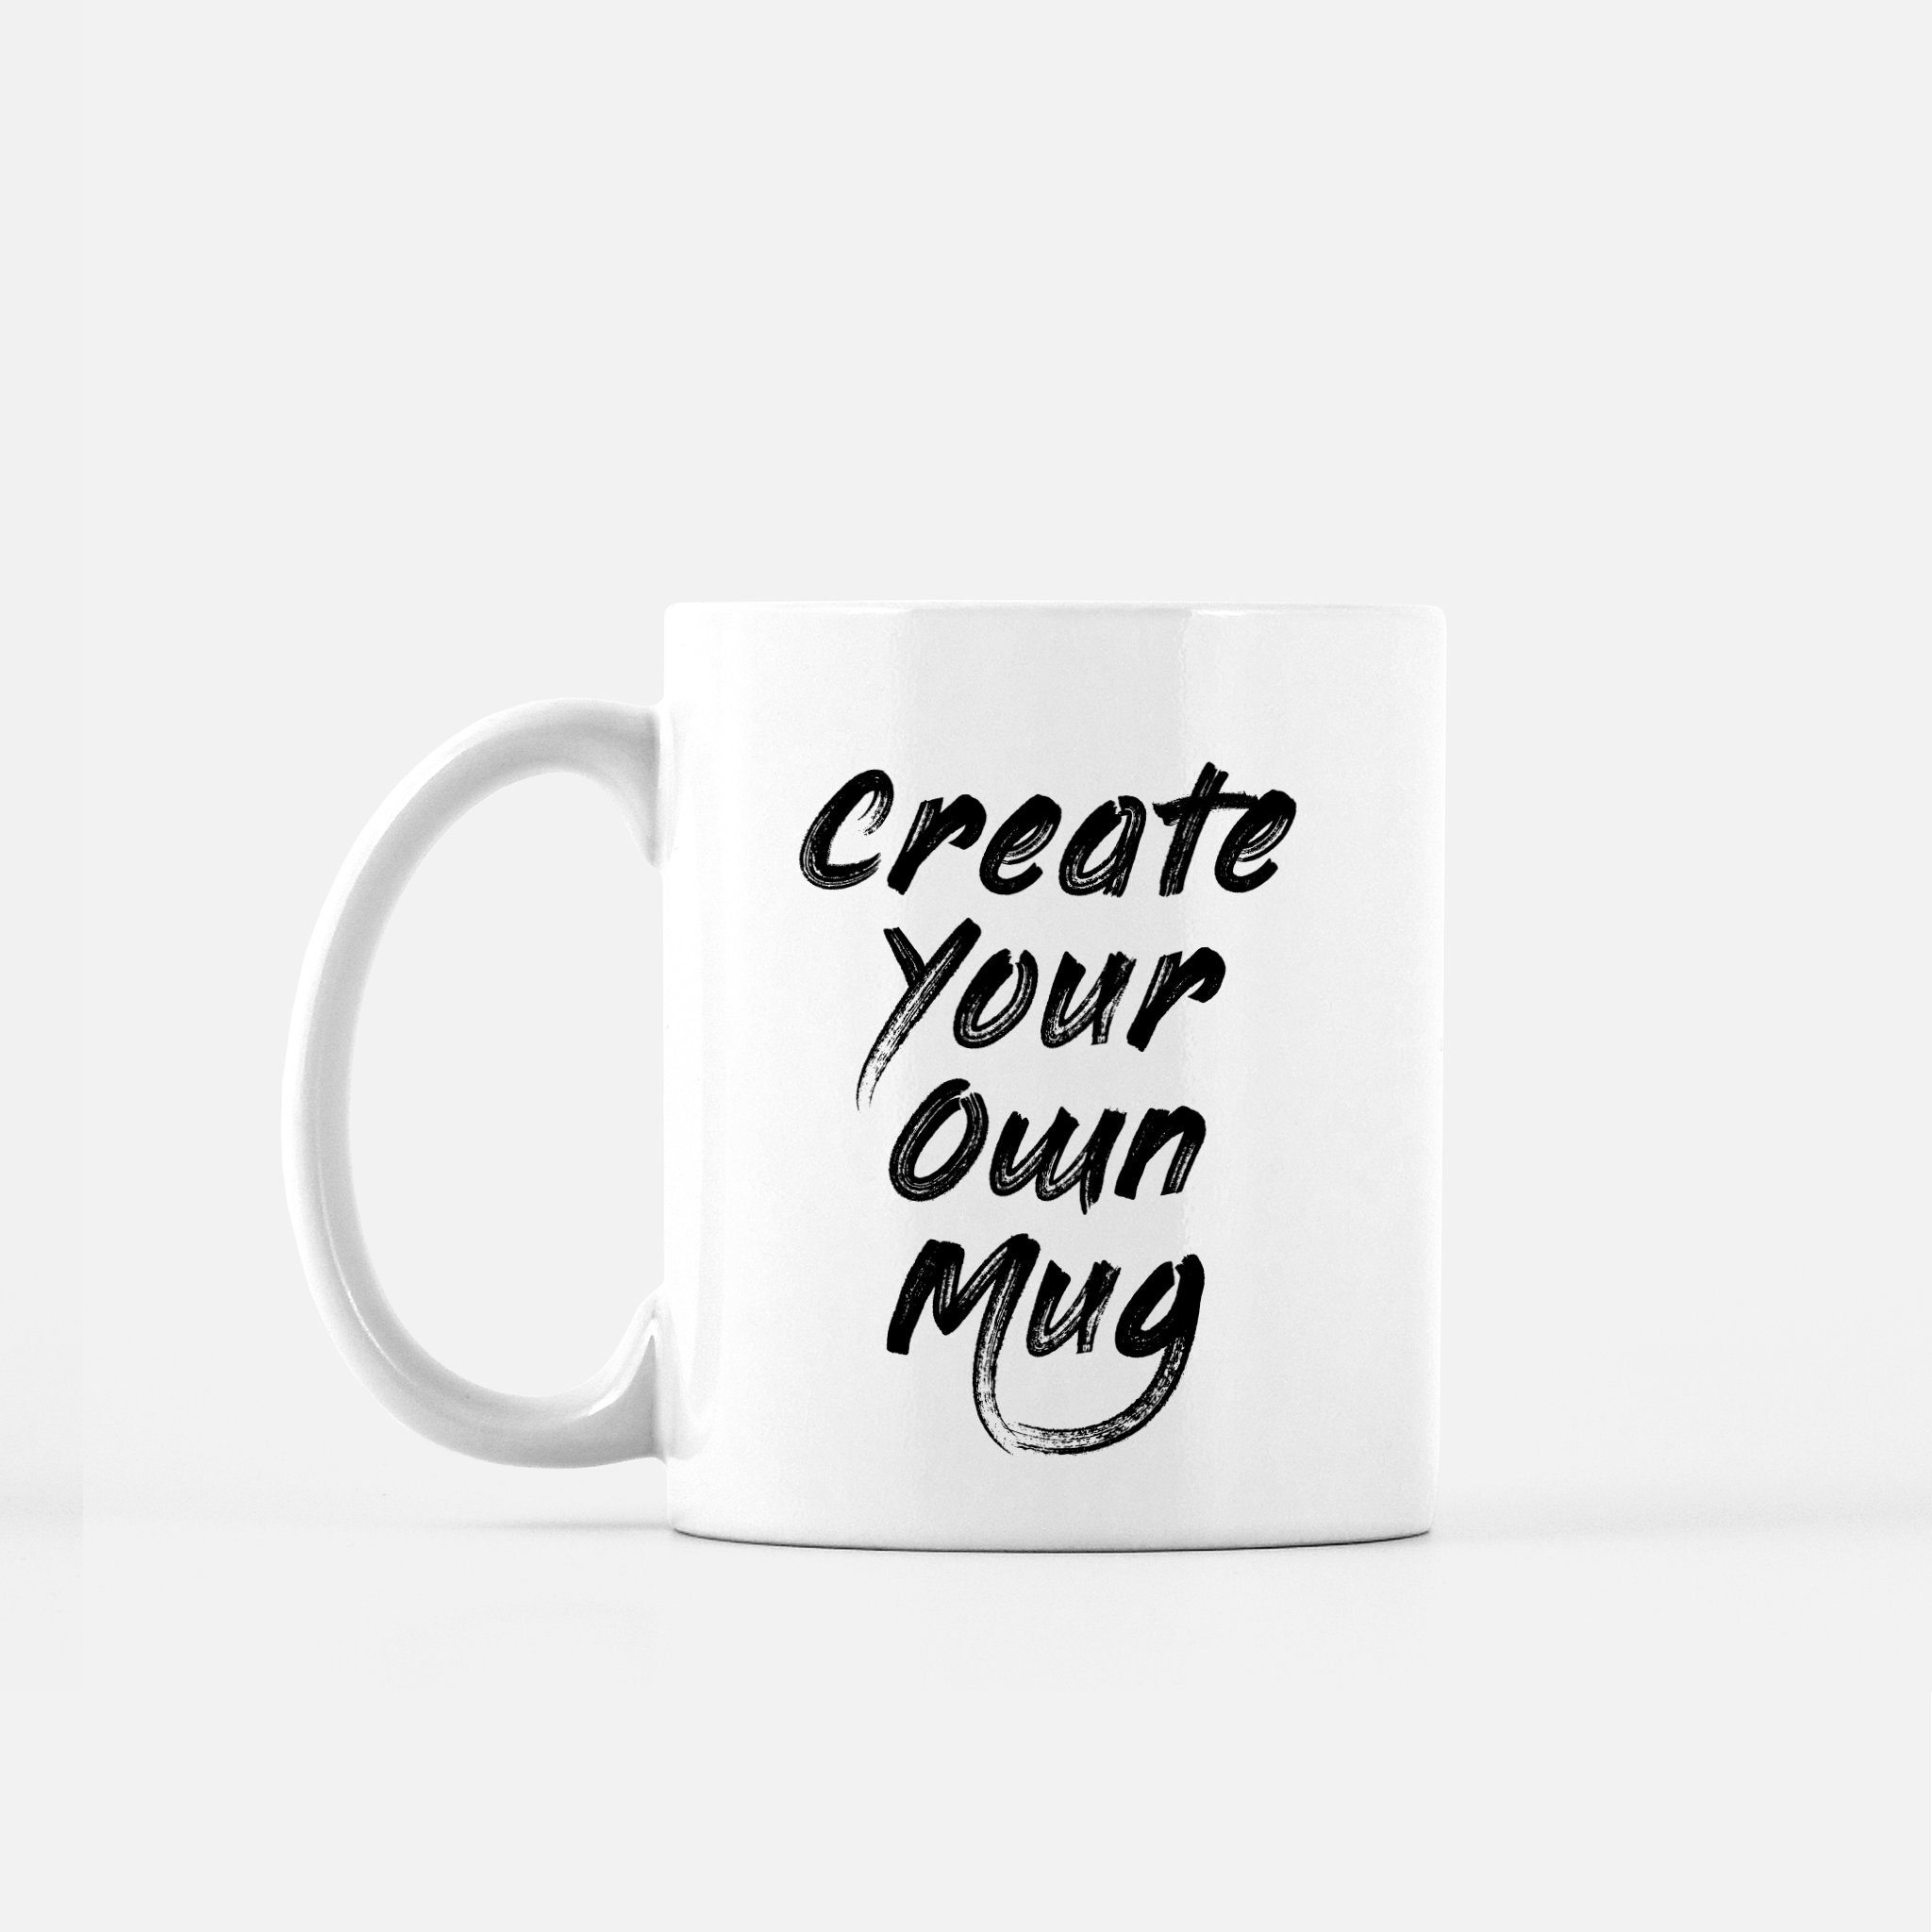 design your mug